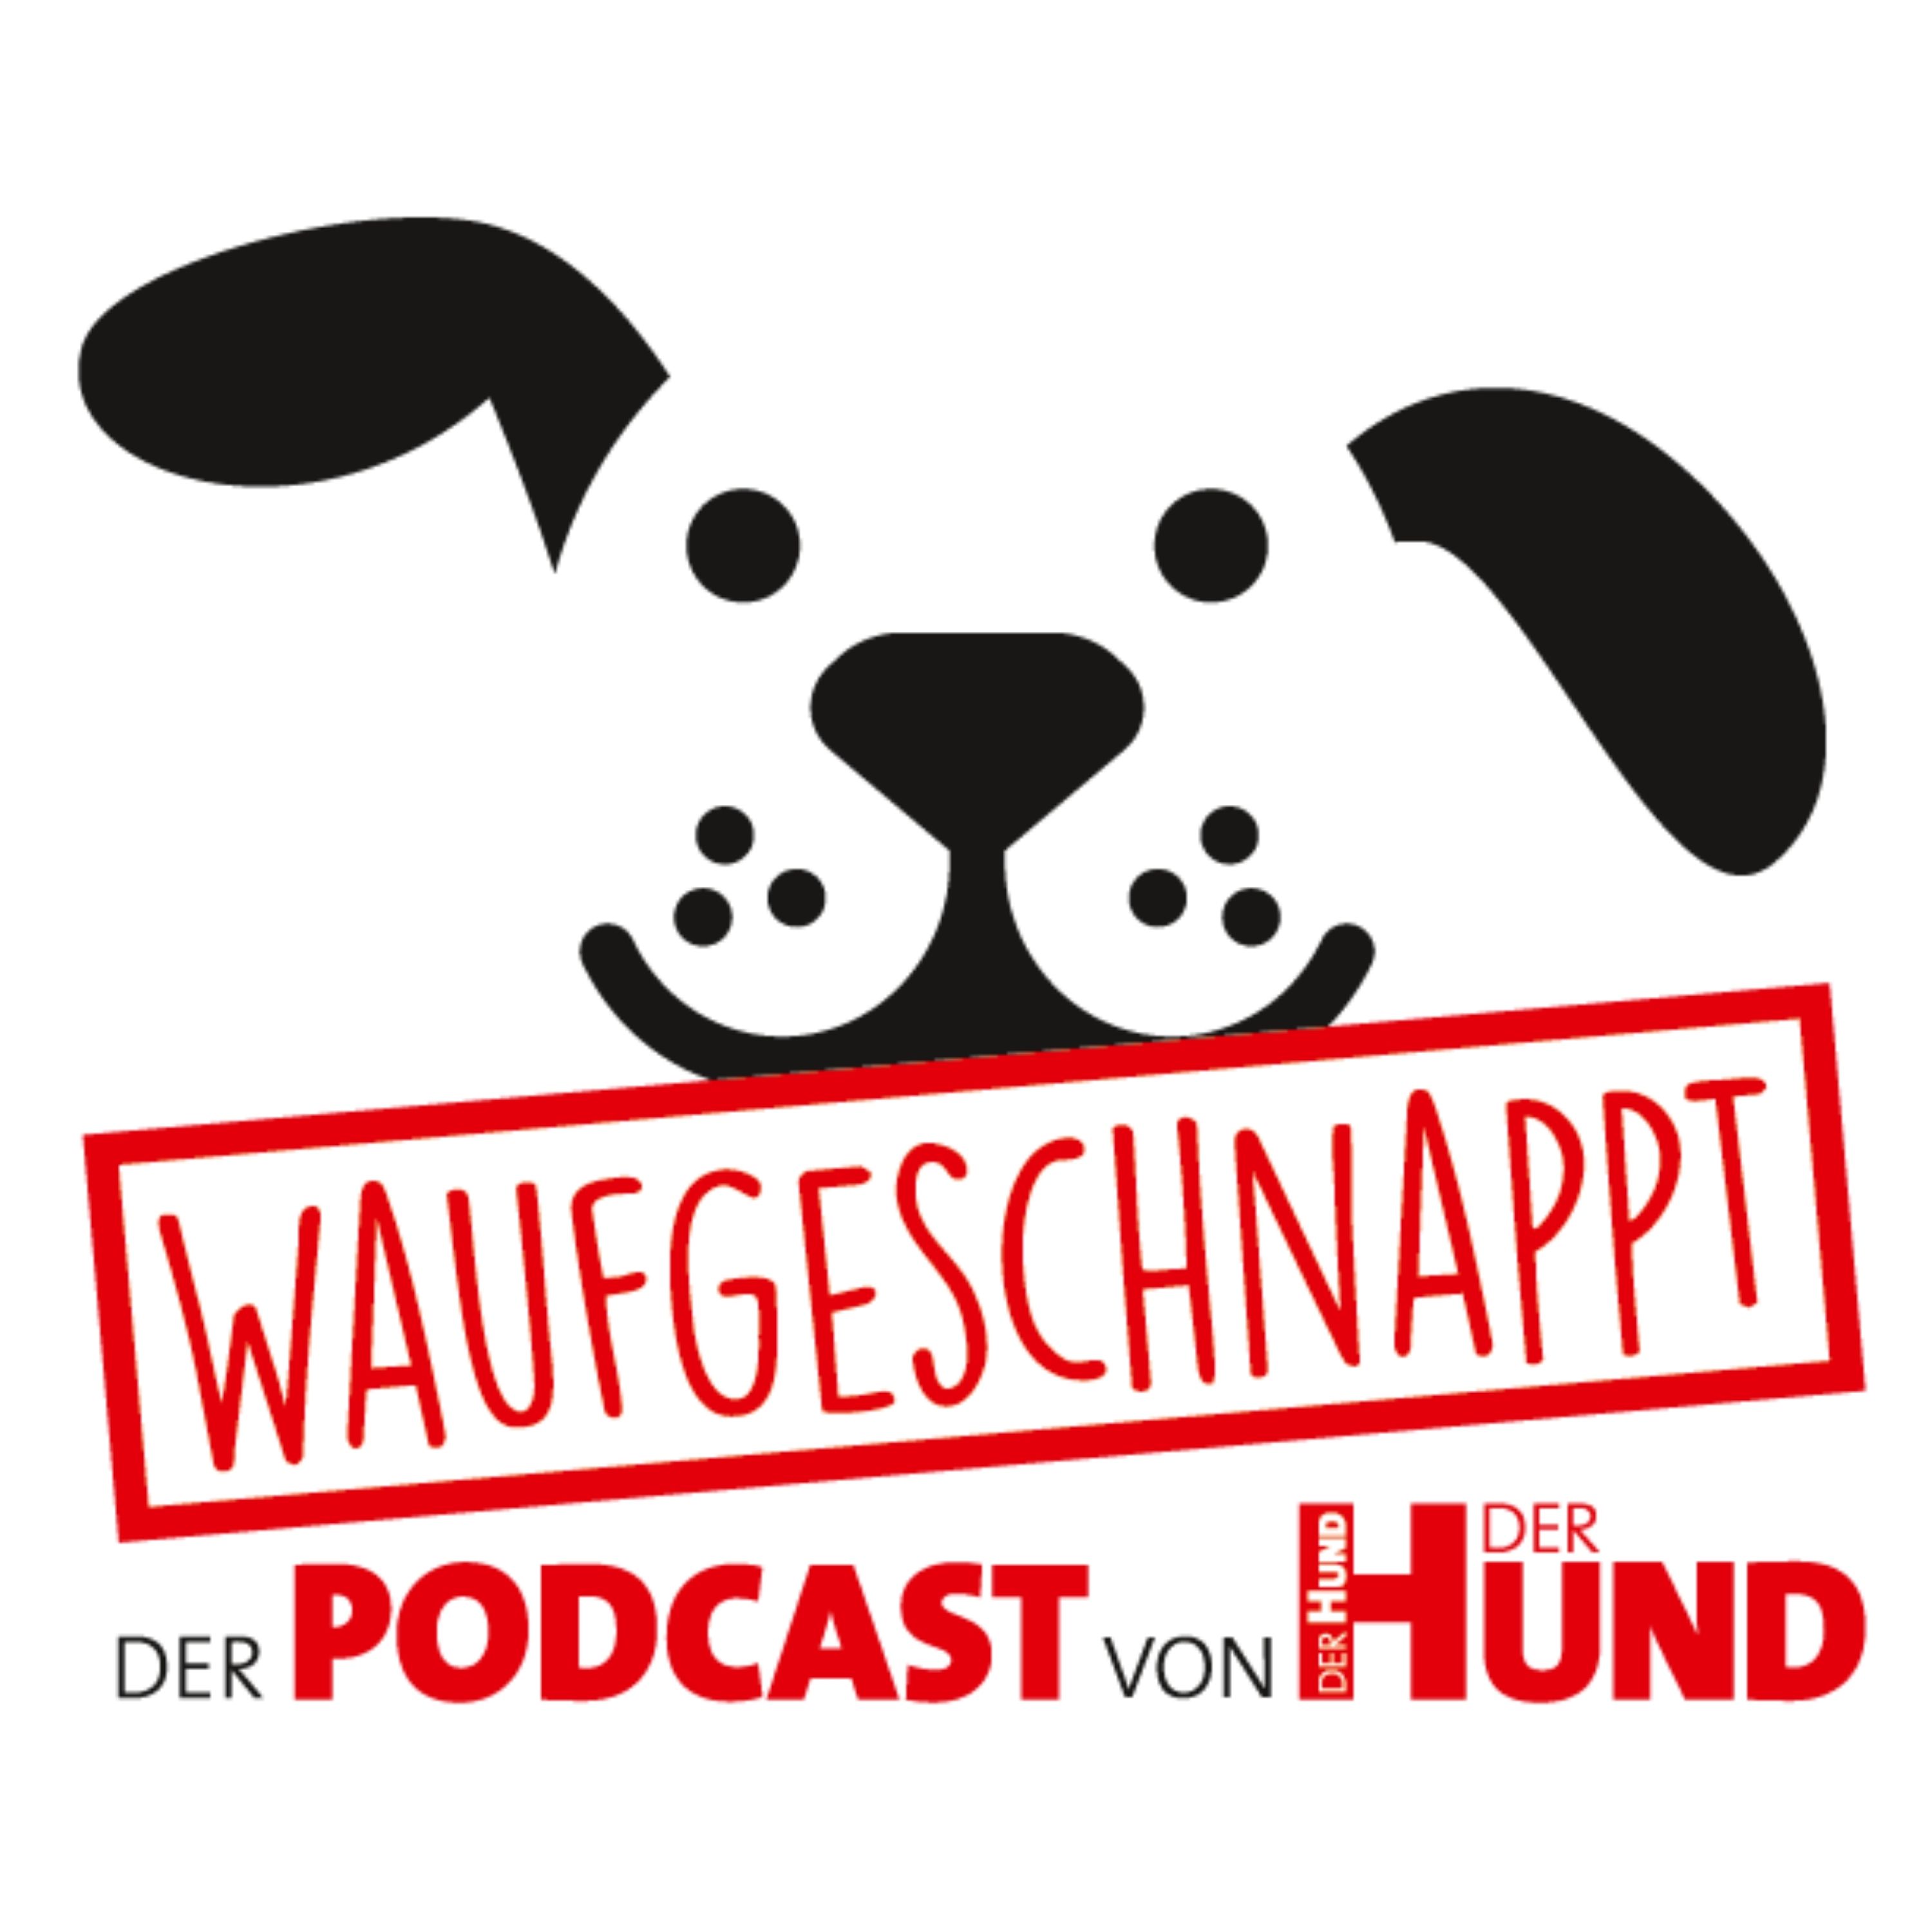 Waufgeschnappt - der Podcast von DER HUND